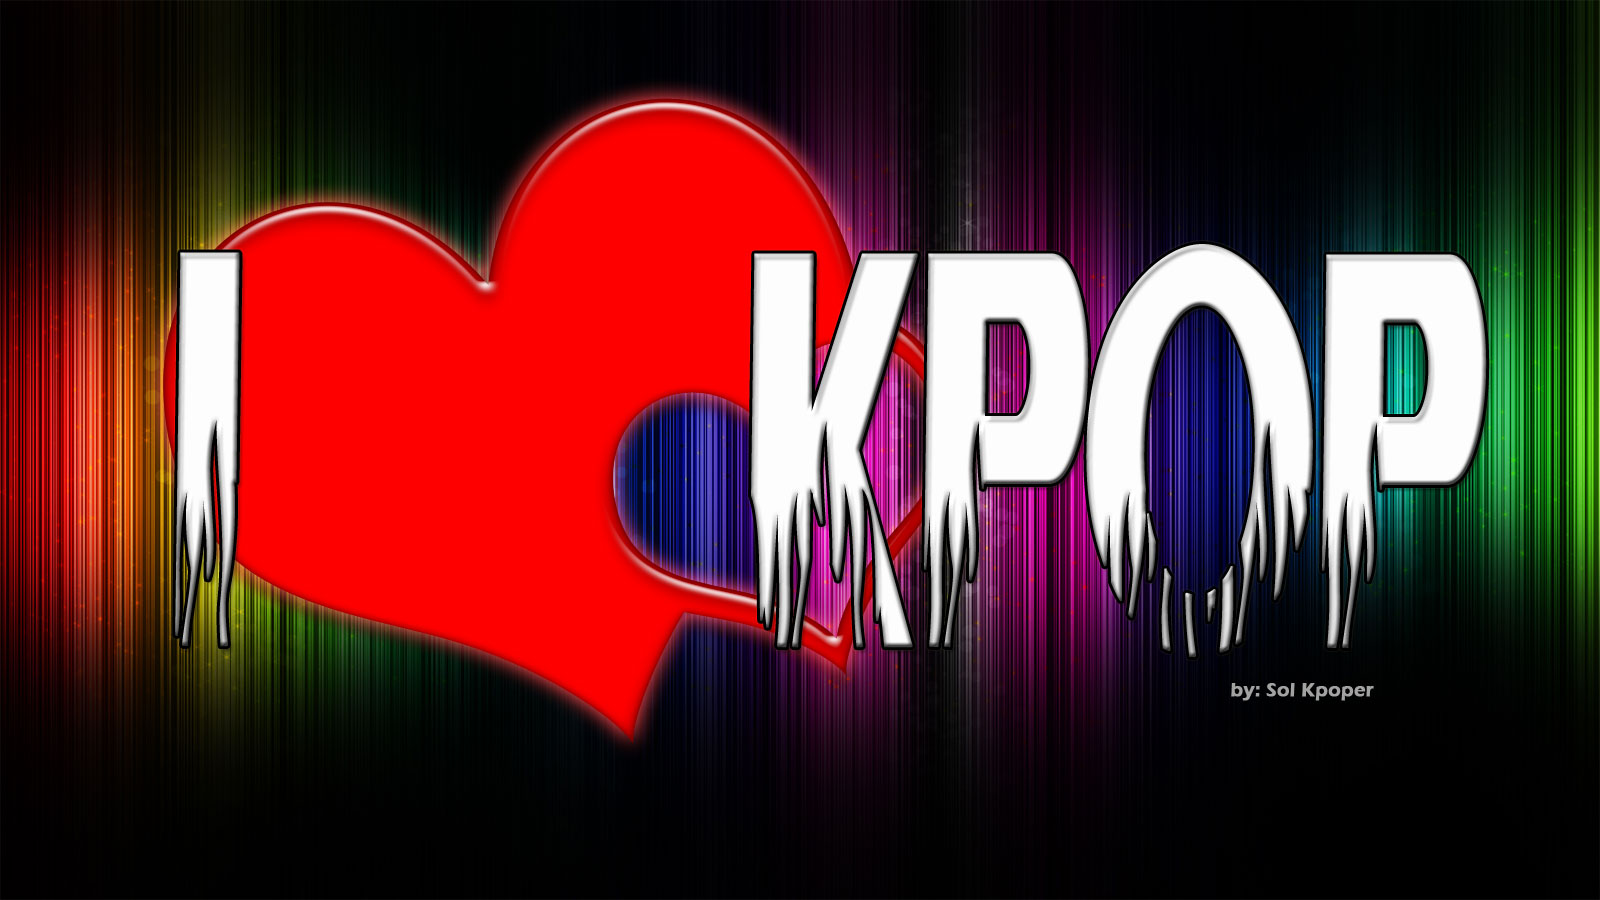 나는 kpop를 사랑한다 바탕 화면,본문,폰트,그래픽 디자인,제도법,디자인